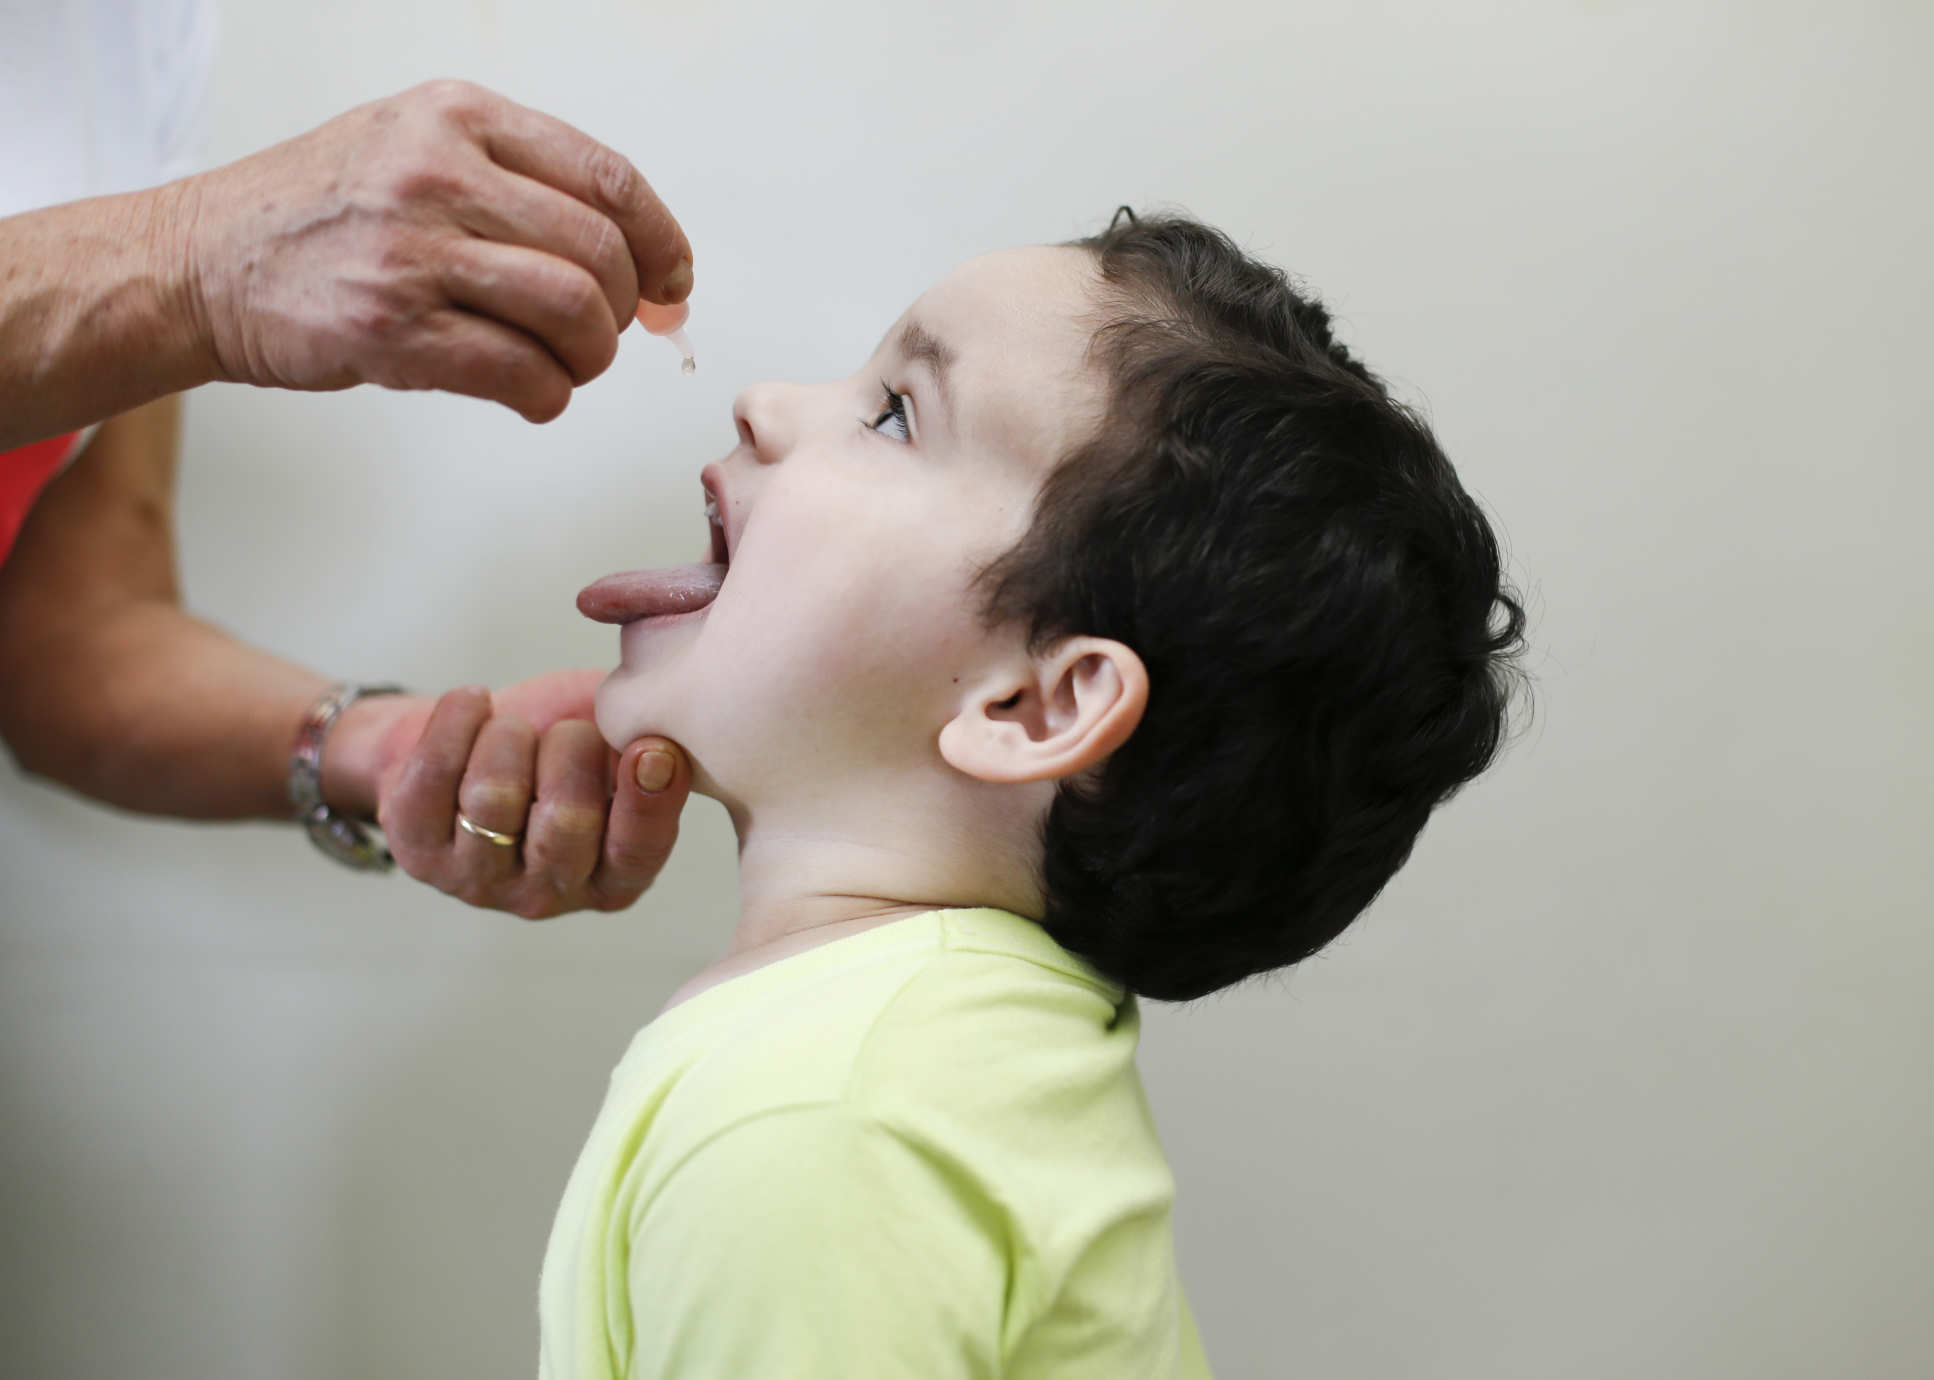 A young boy receiving an oral polio vaccine